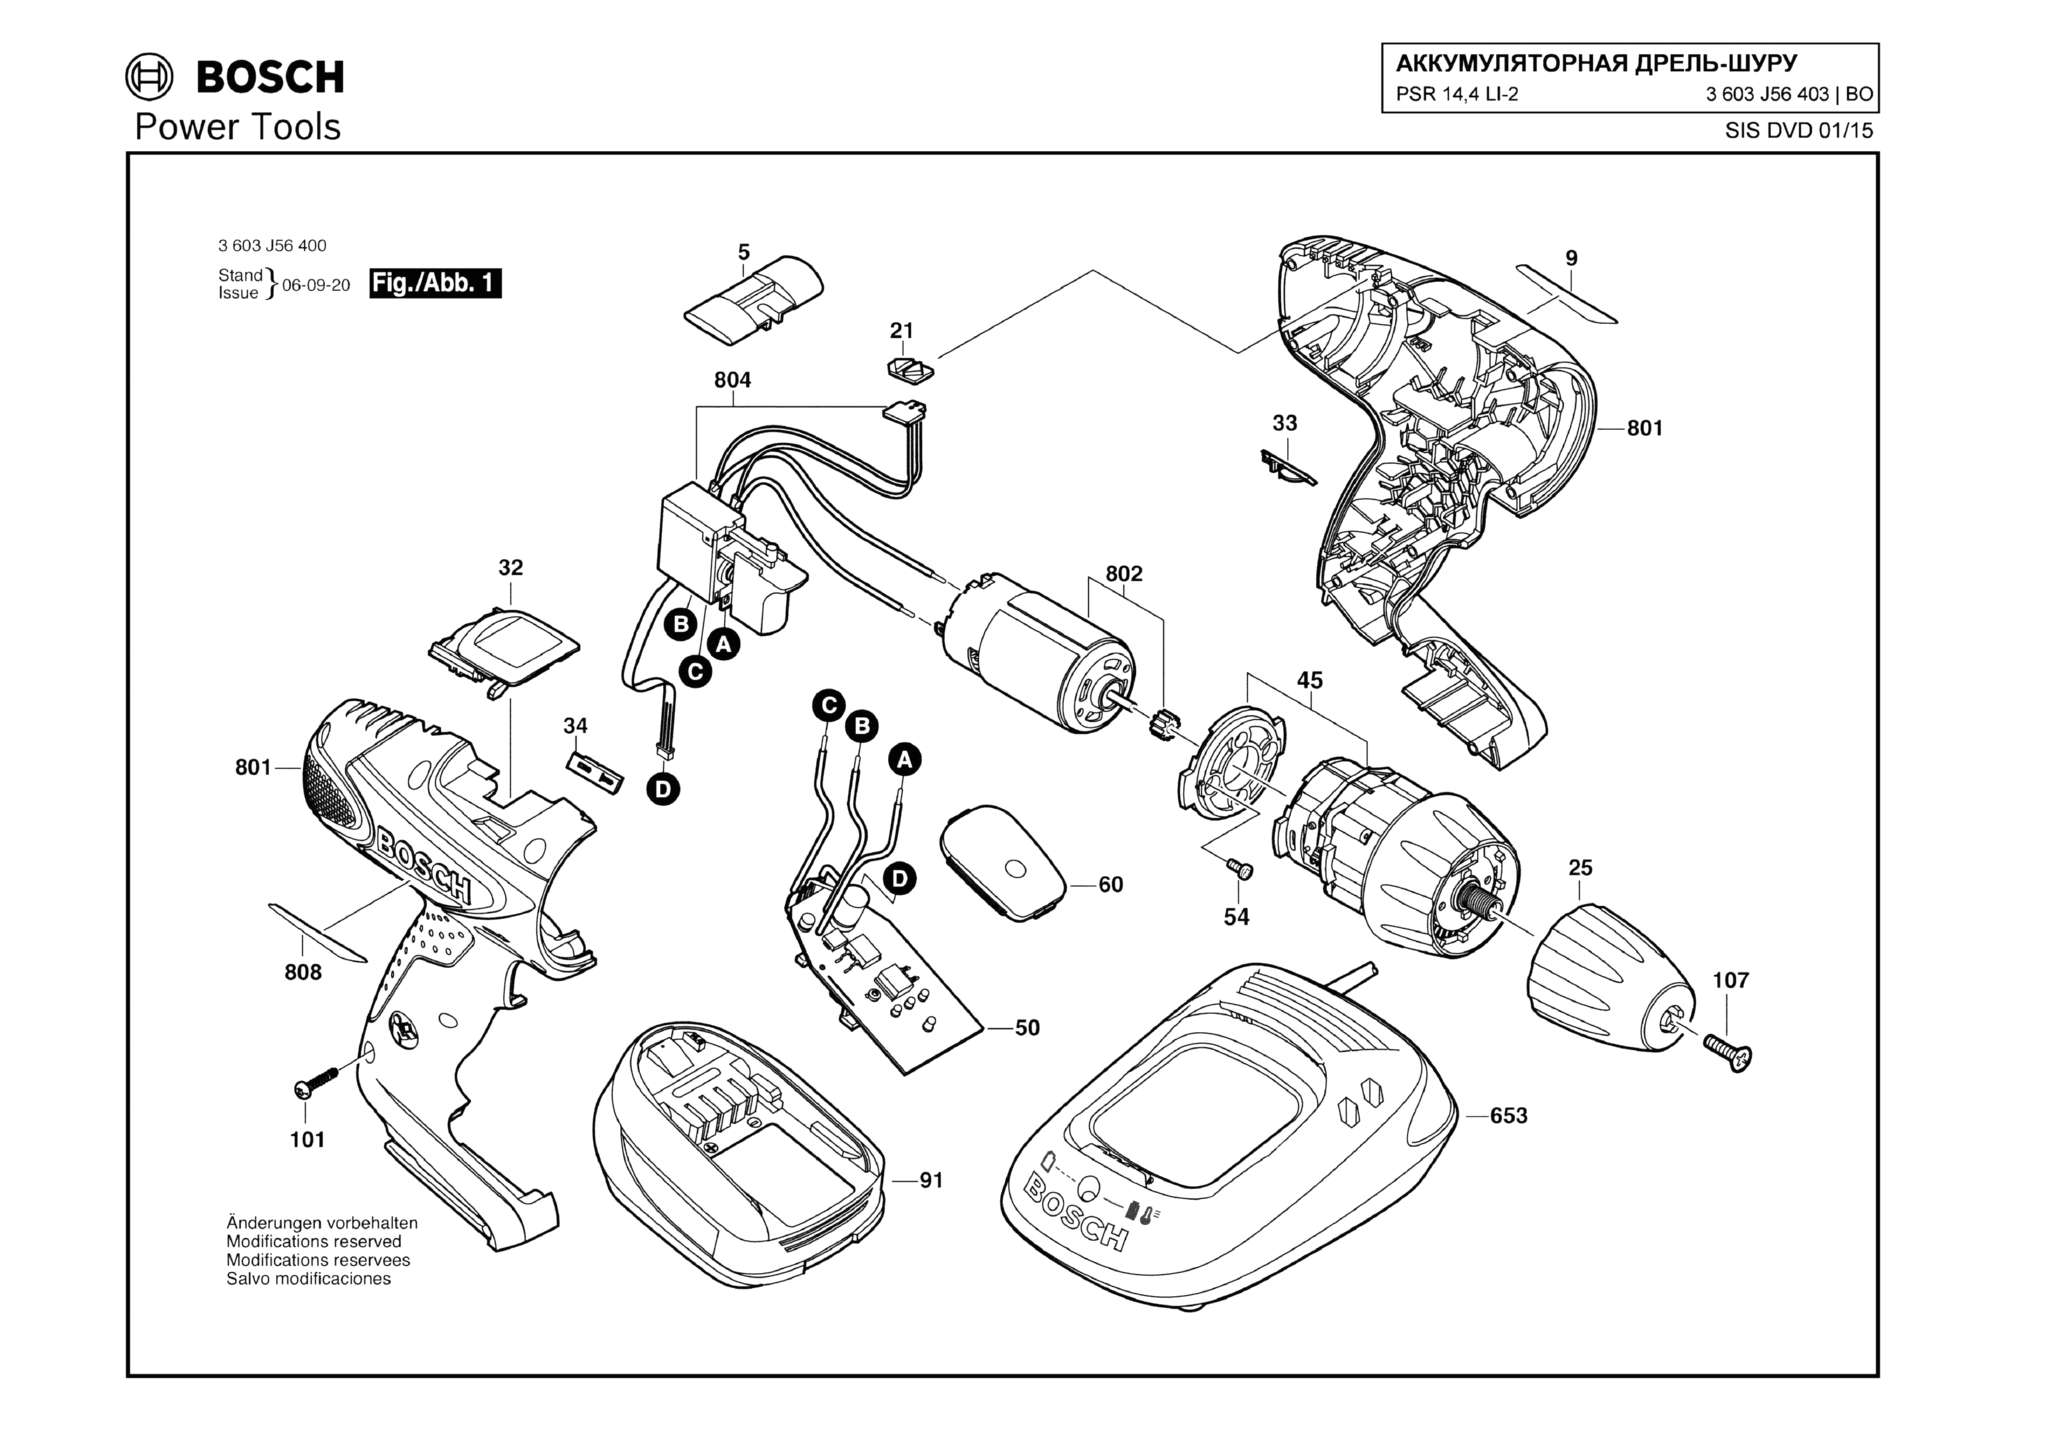 Запчасти, схема и деталировка Bosch PSR 14,4 LI-2 (ТИП 3603J56403)